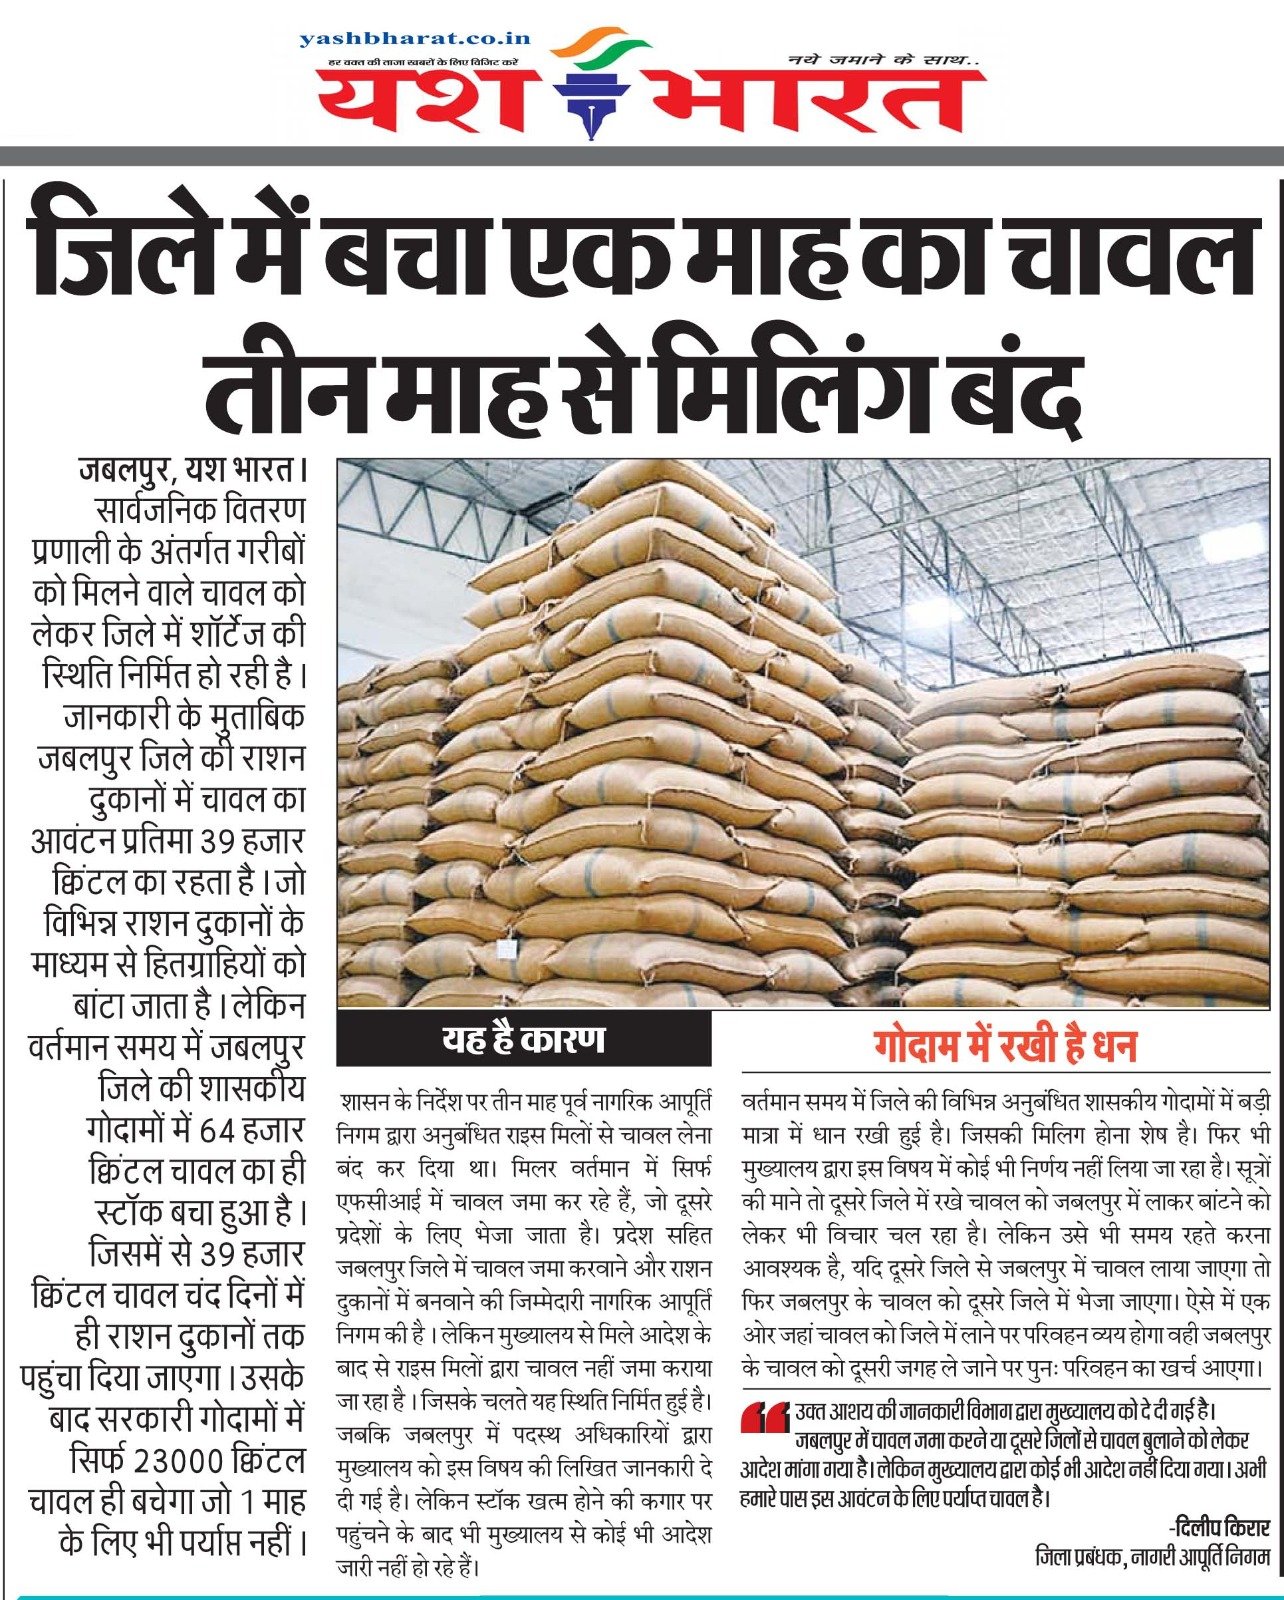 JABALPUR NEWS: - खबर का असर: नान में जमा होगा चावल, भोपाल से आया आदेश